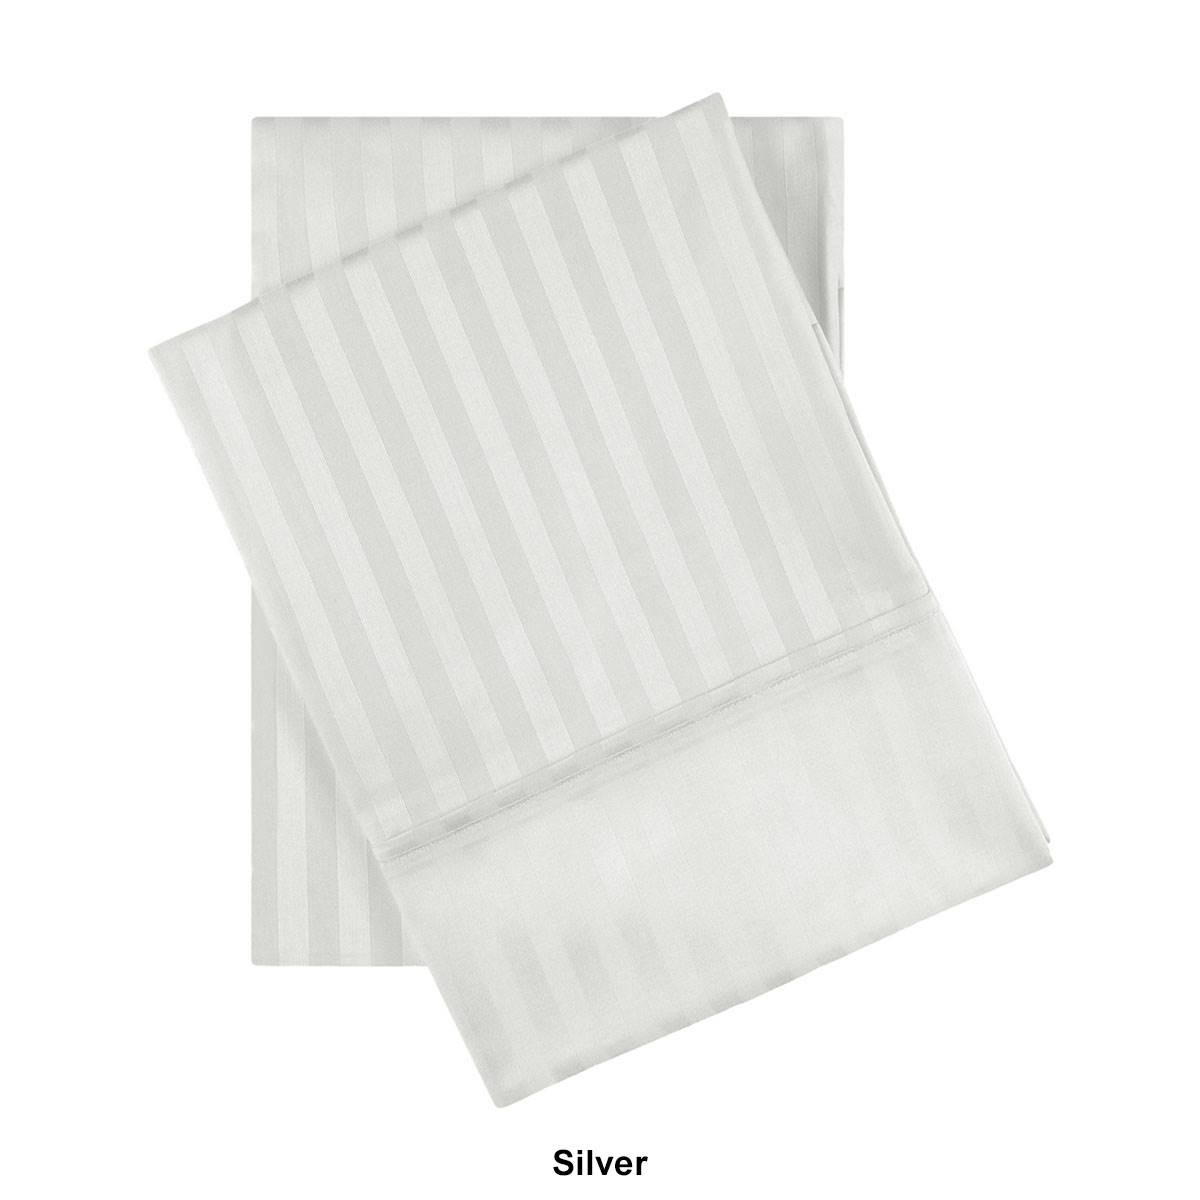 Superior 2pc. Egyptian Cotton Stripe Pillowcase Set